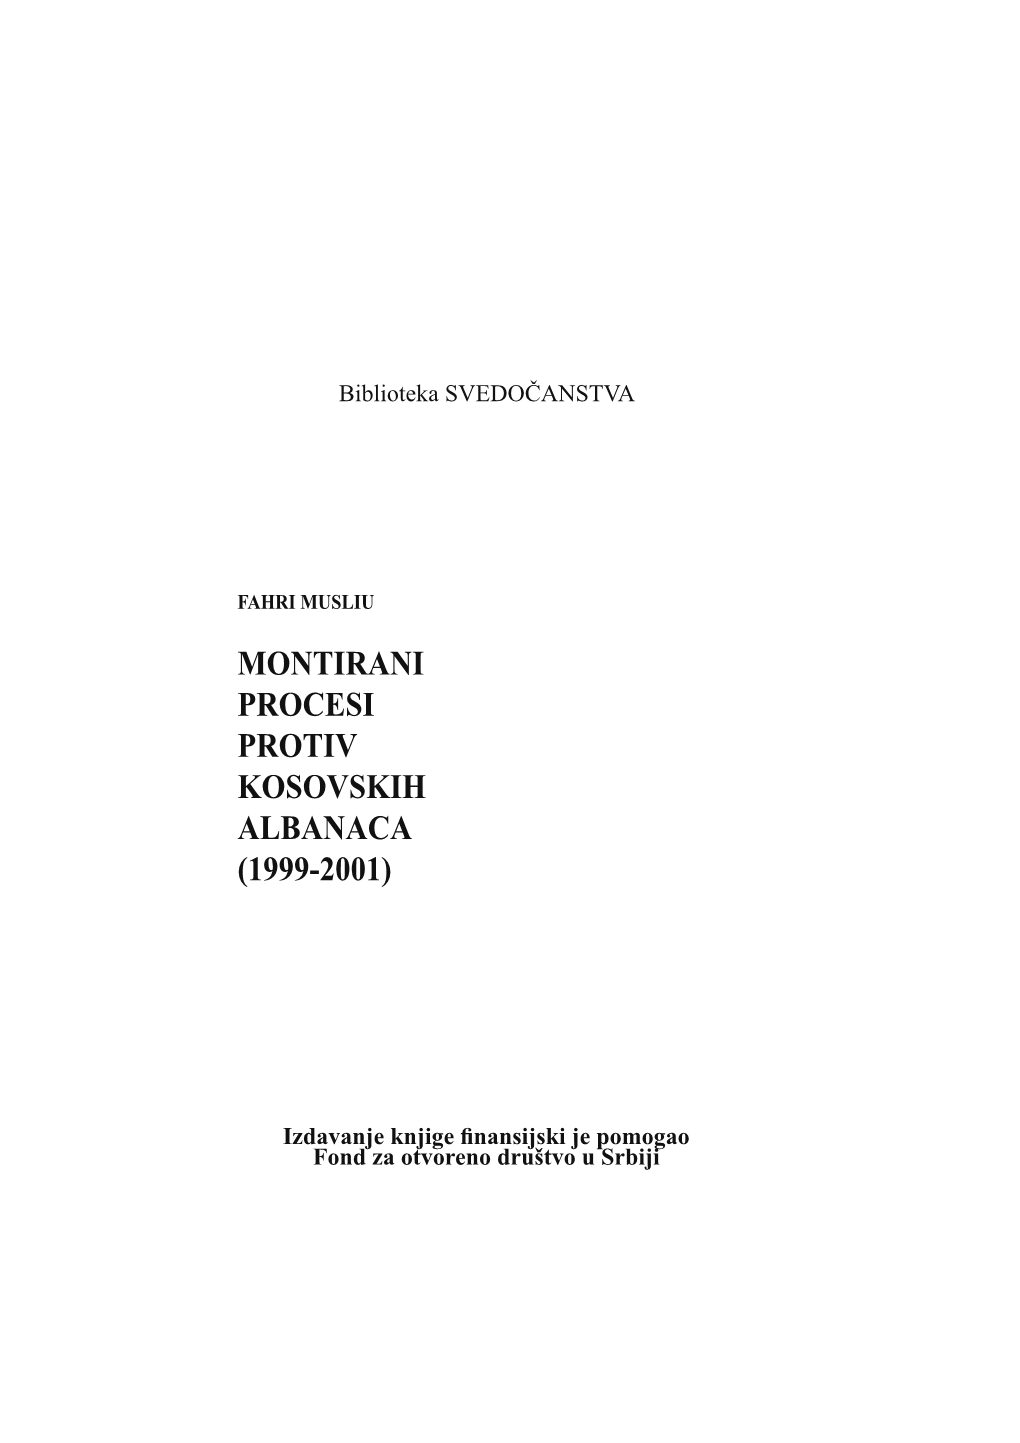 Montirani Procesi Protiv Kosovskih Albanaca PROTIV (1999-2001) KOSOVSKIH ALBANACA (1999-2001)